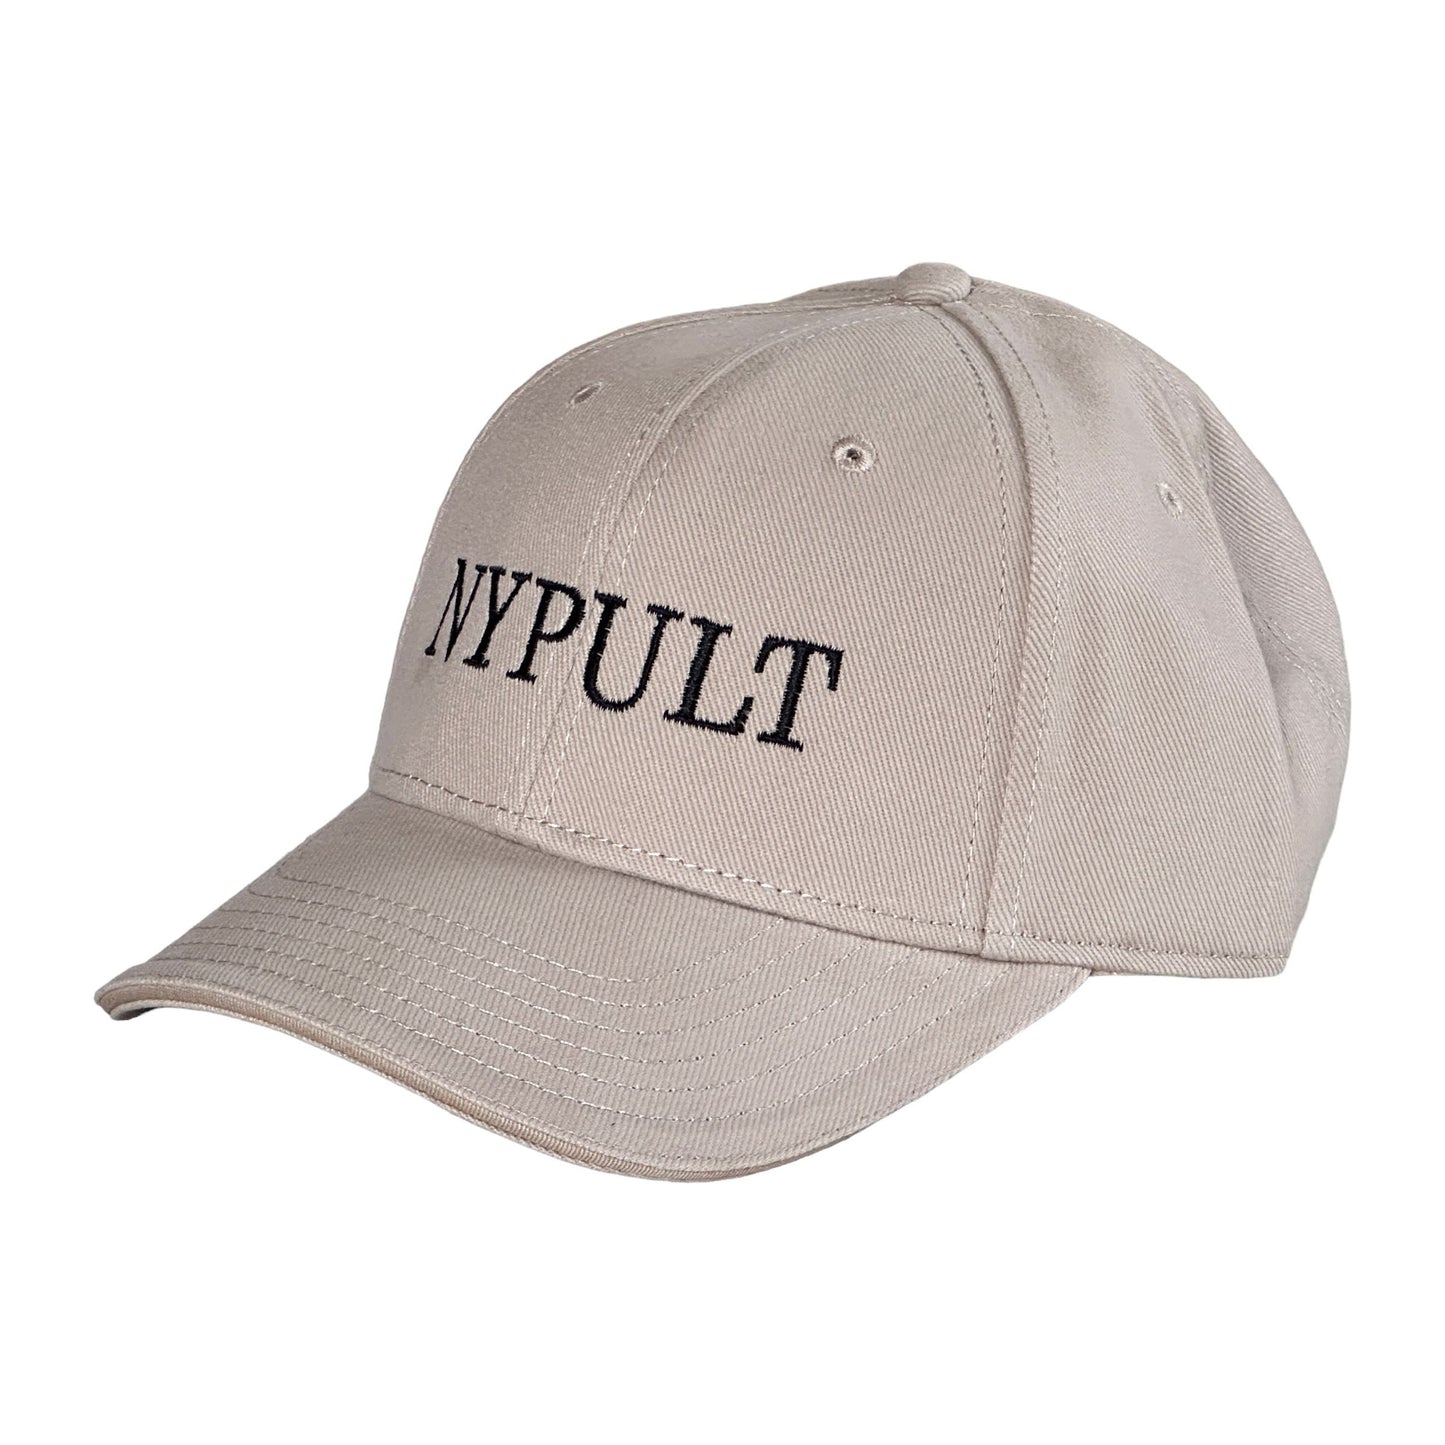 Caps -NYPULT